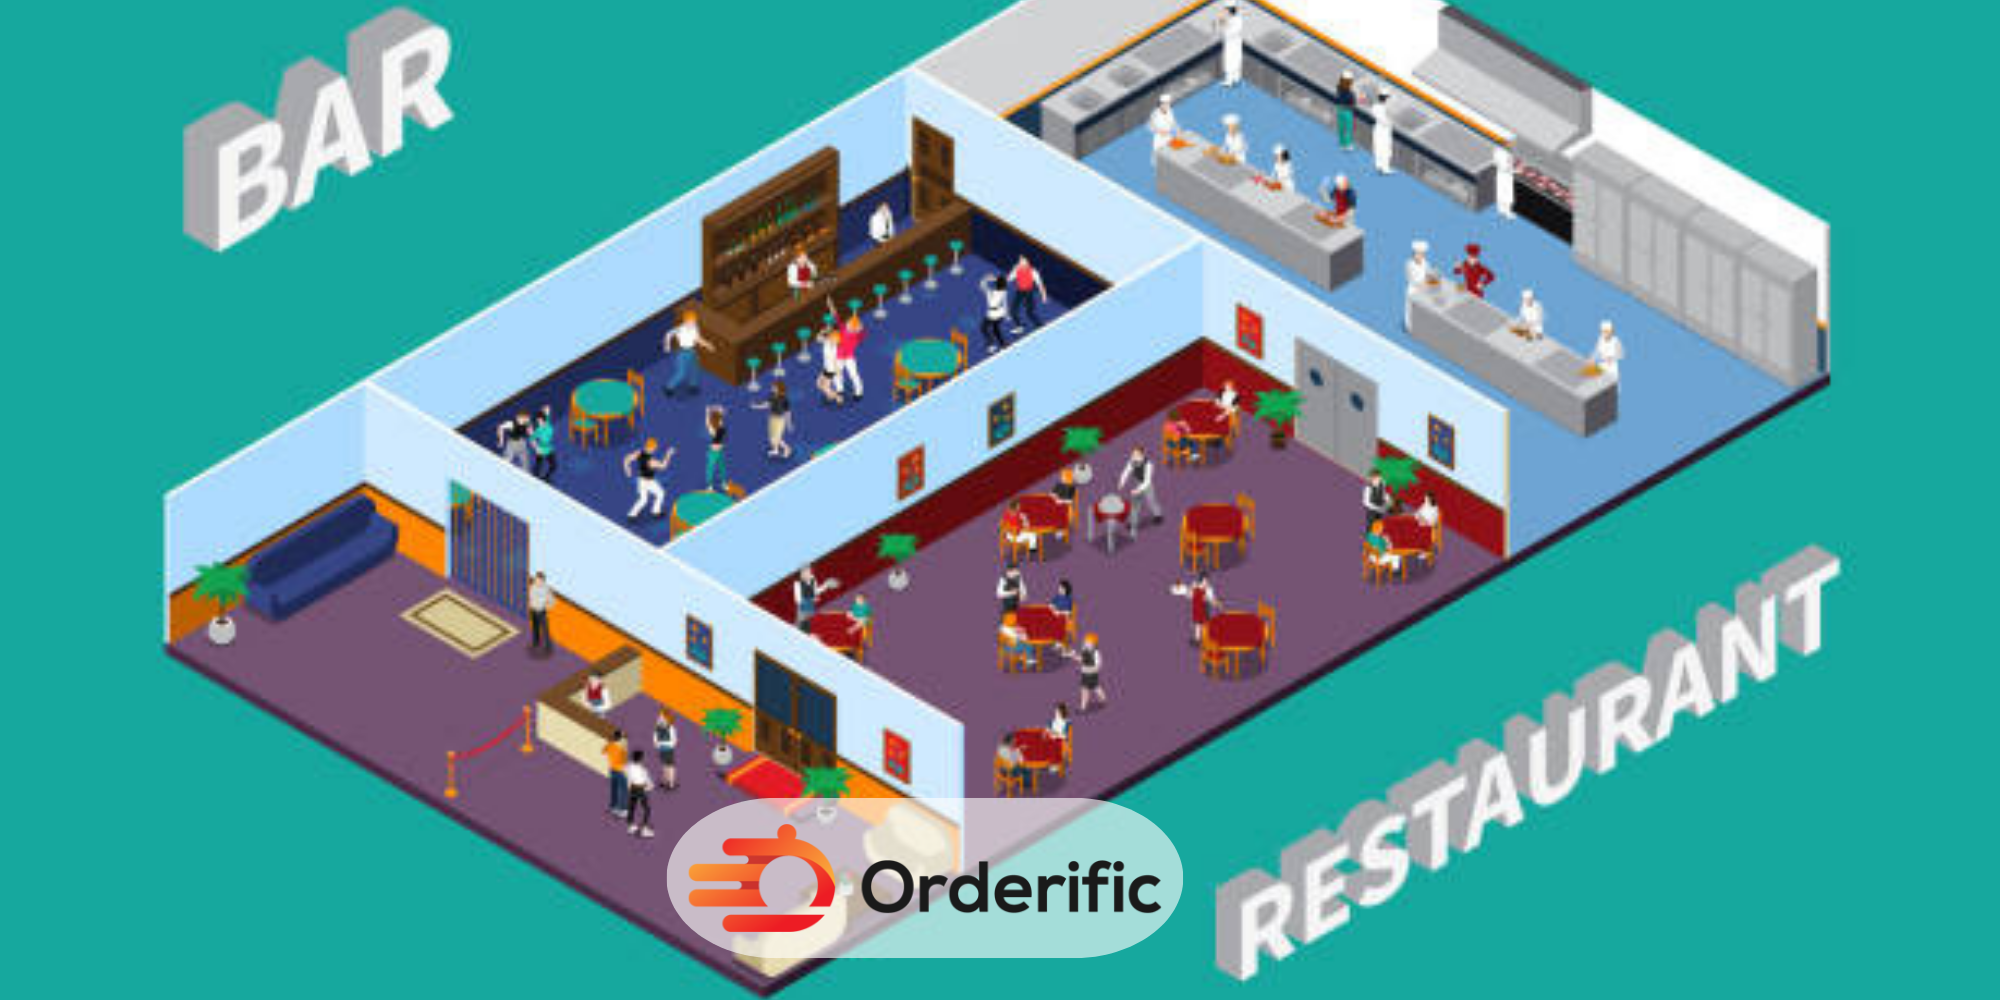 restaurant layout